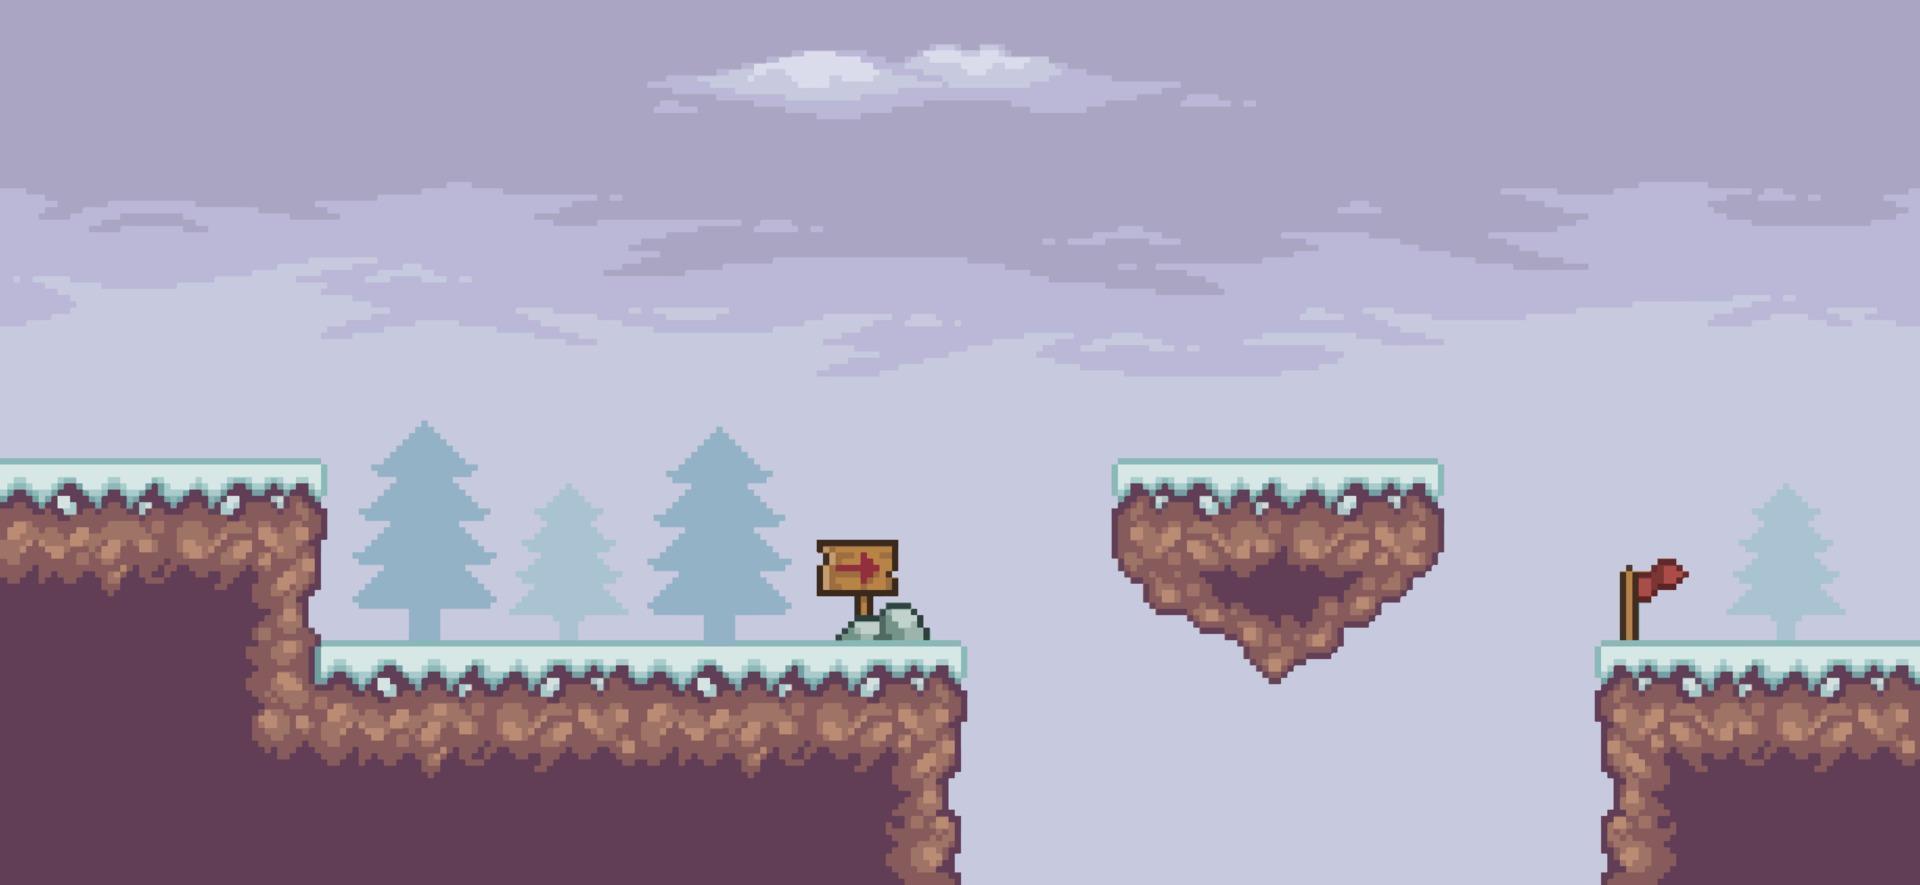 Pixelkunst-Spielszene im Schnee mit schwimmender Plattform, Kiefern, Wolken und 8-Bit-Hintergrund vektor